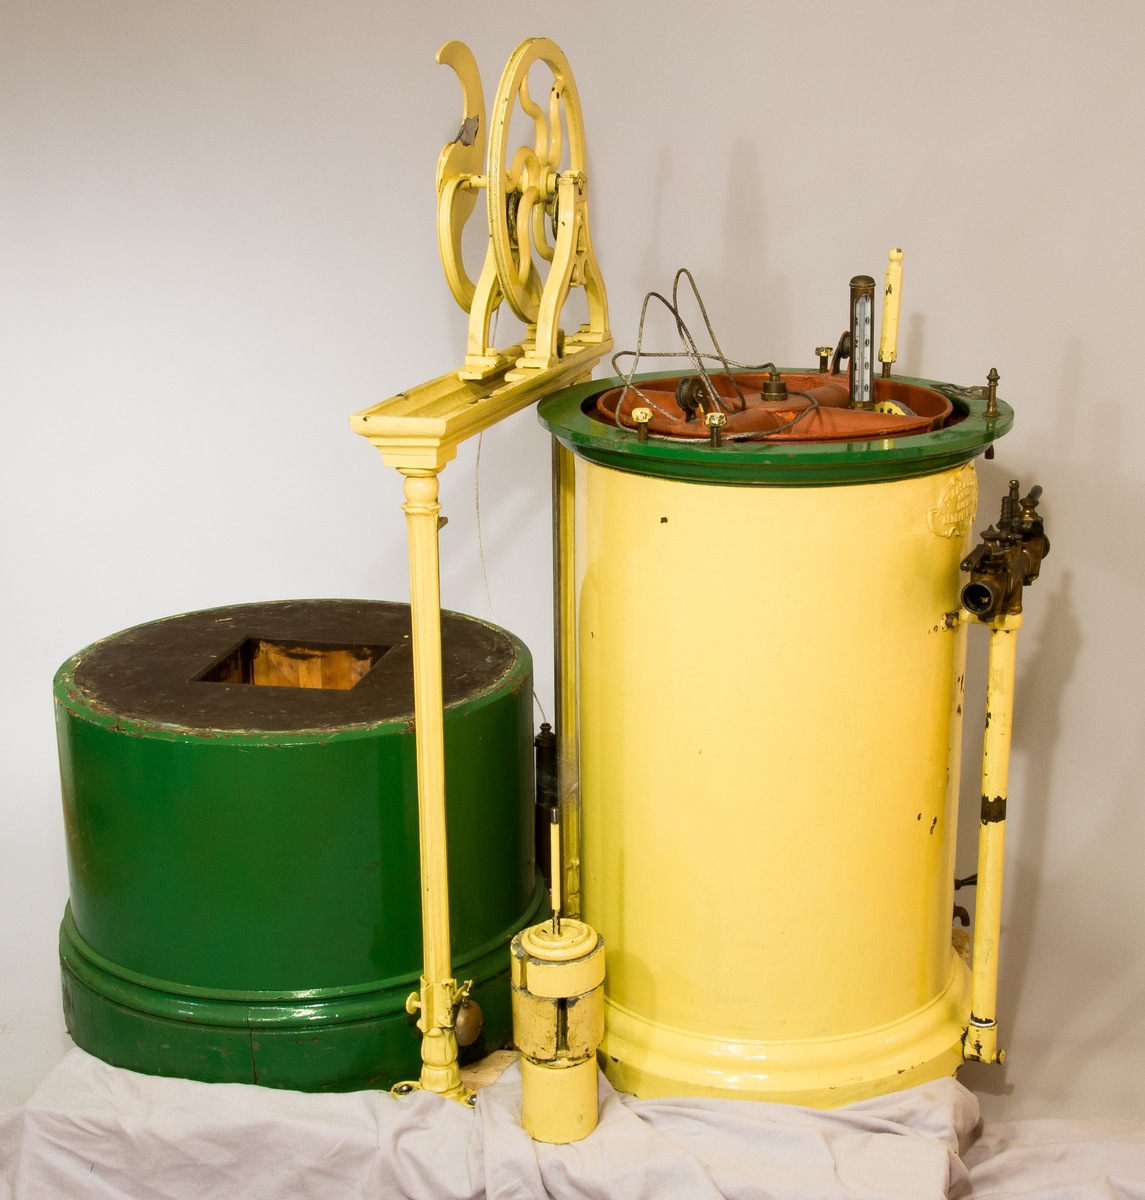 Gasklocka målad i gul och grön färg. Har texten "The gas meter Co, limited makers Oldhall works" på sig.